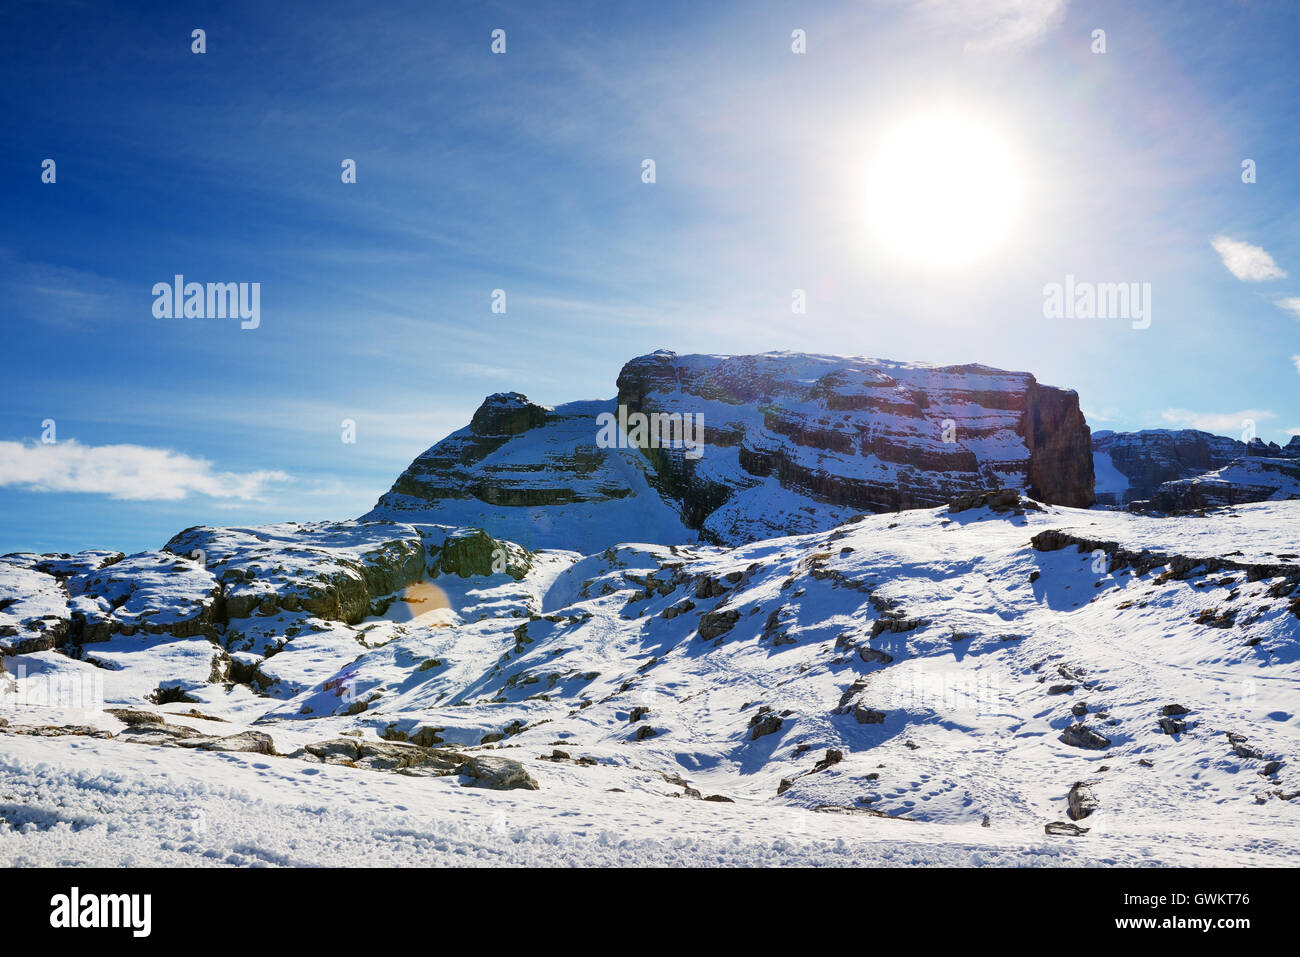 La pente de ski avec une vue sur les montagnes des Dolomites, à Madonna di Campiglio, Italie Banque D'Images